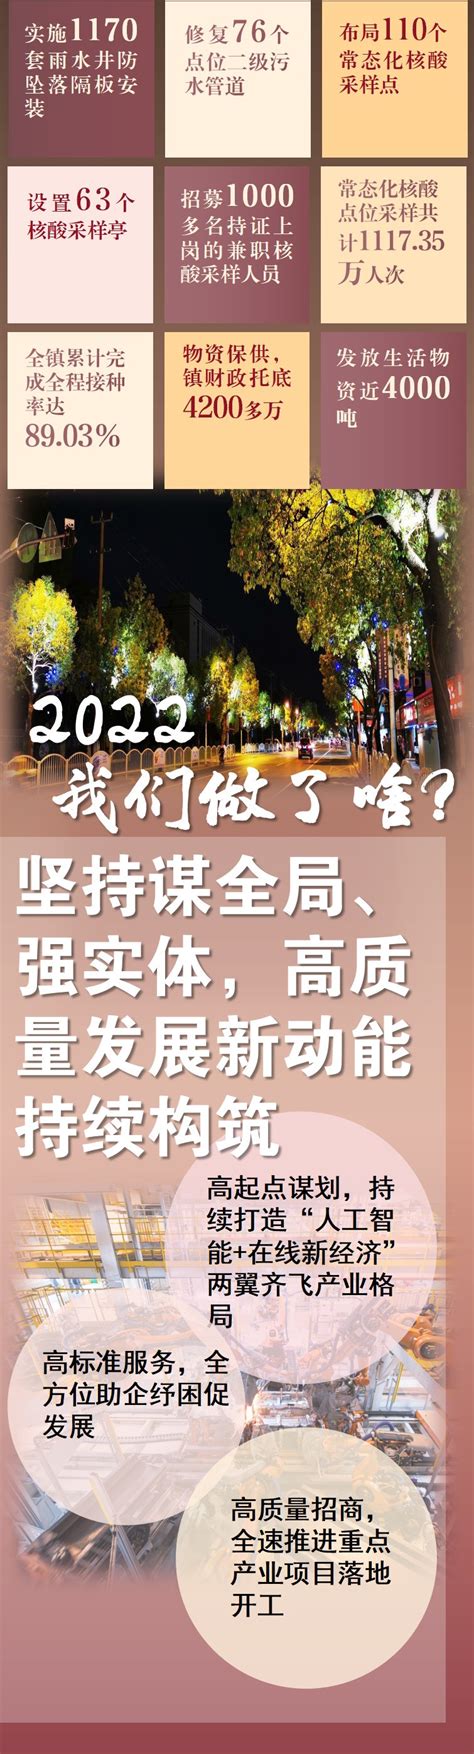 一图读懂《洞泾镇2022年政府工作报告》